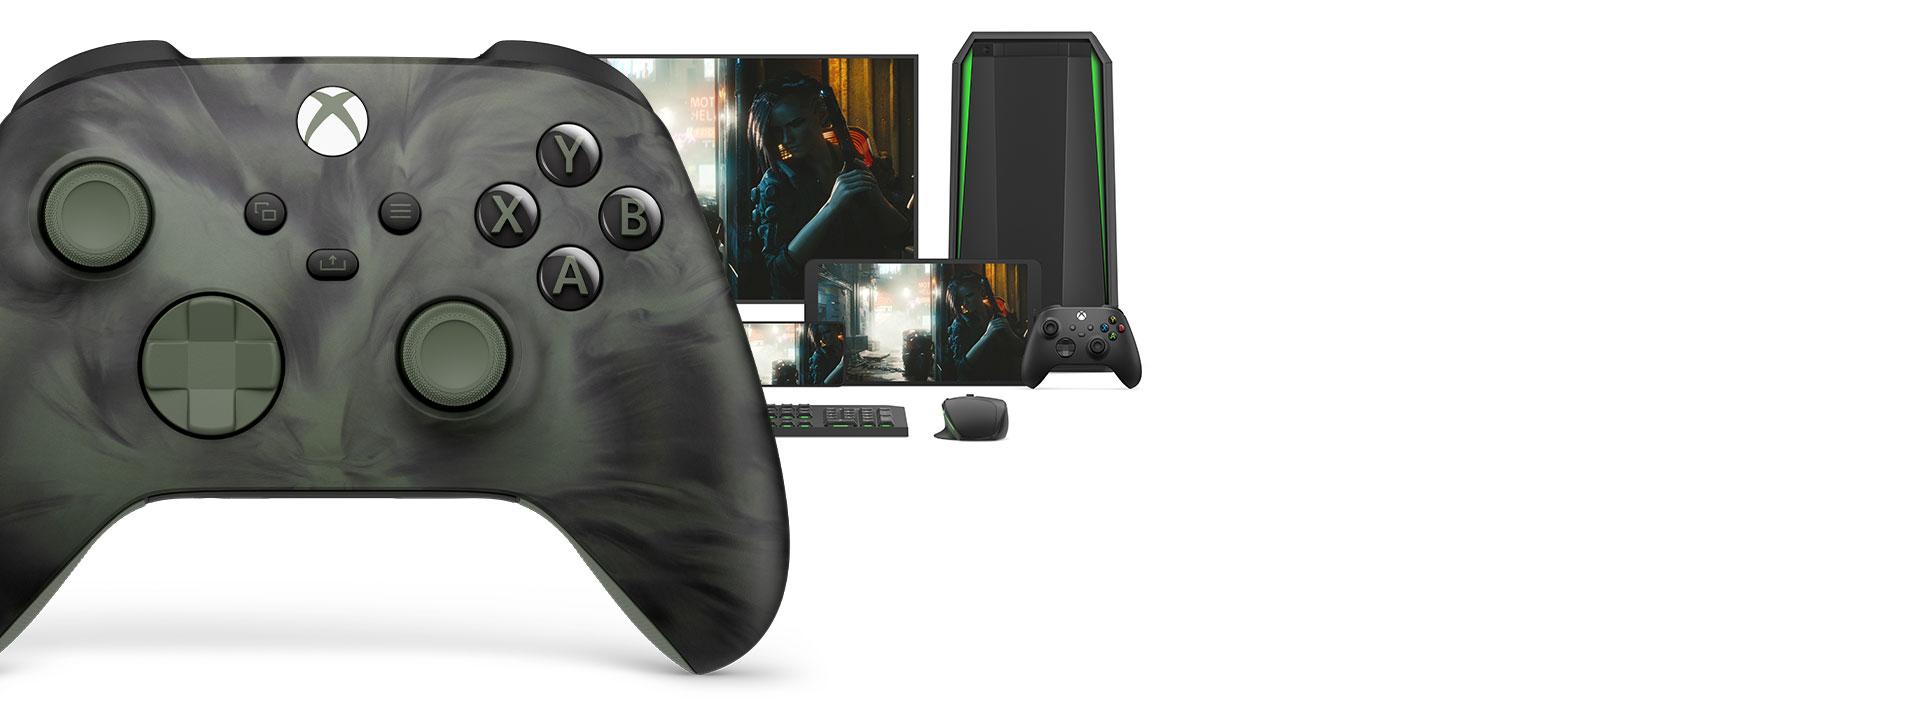 Vooraanzicht van de rechterkant van de Xbox draadloze controller - Nocturnal Vapor Special Edition met verschillende speelbare platforms erachter